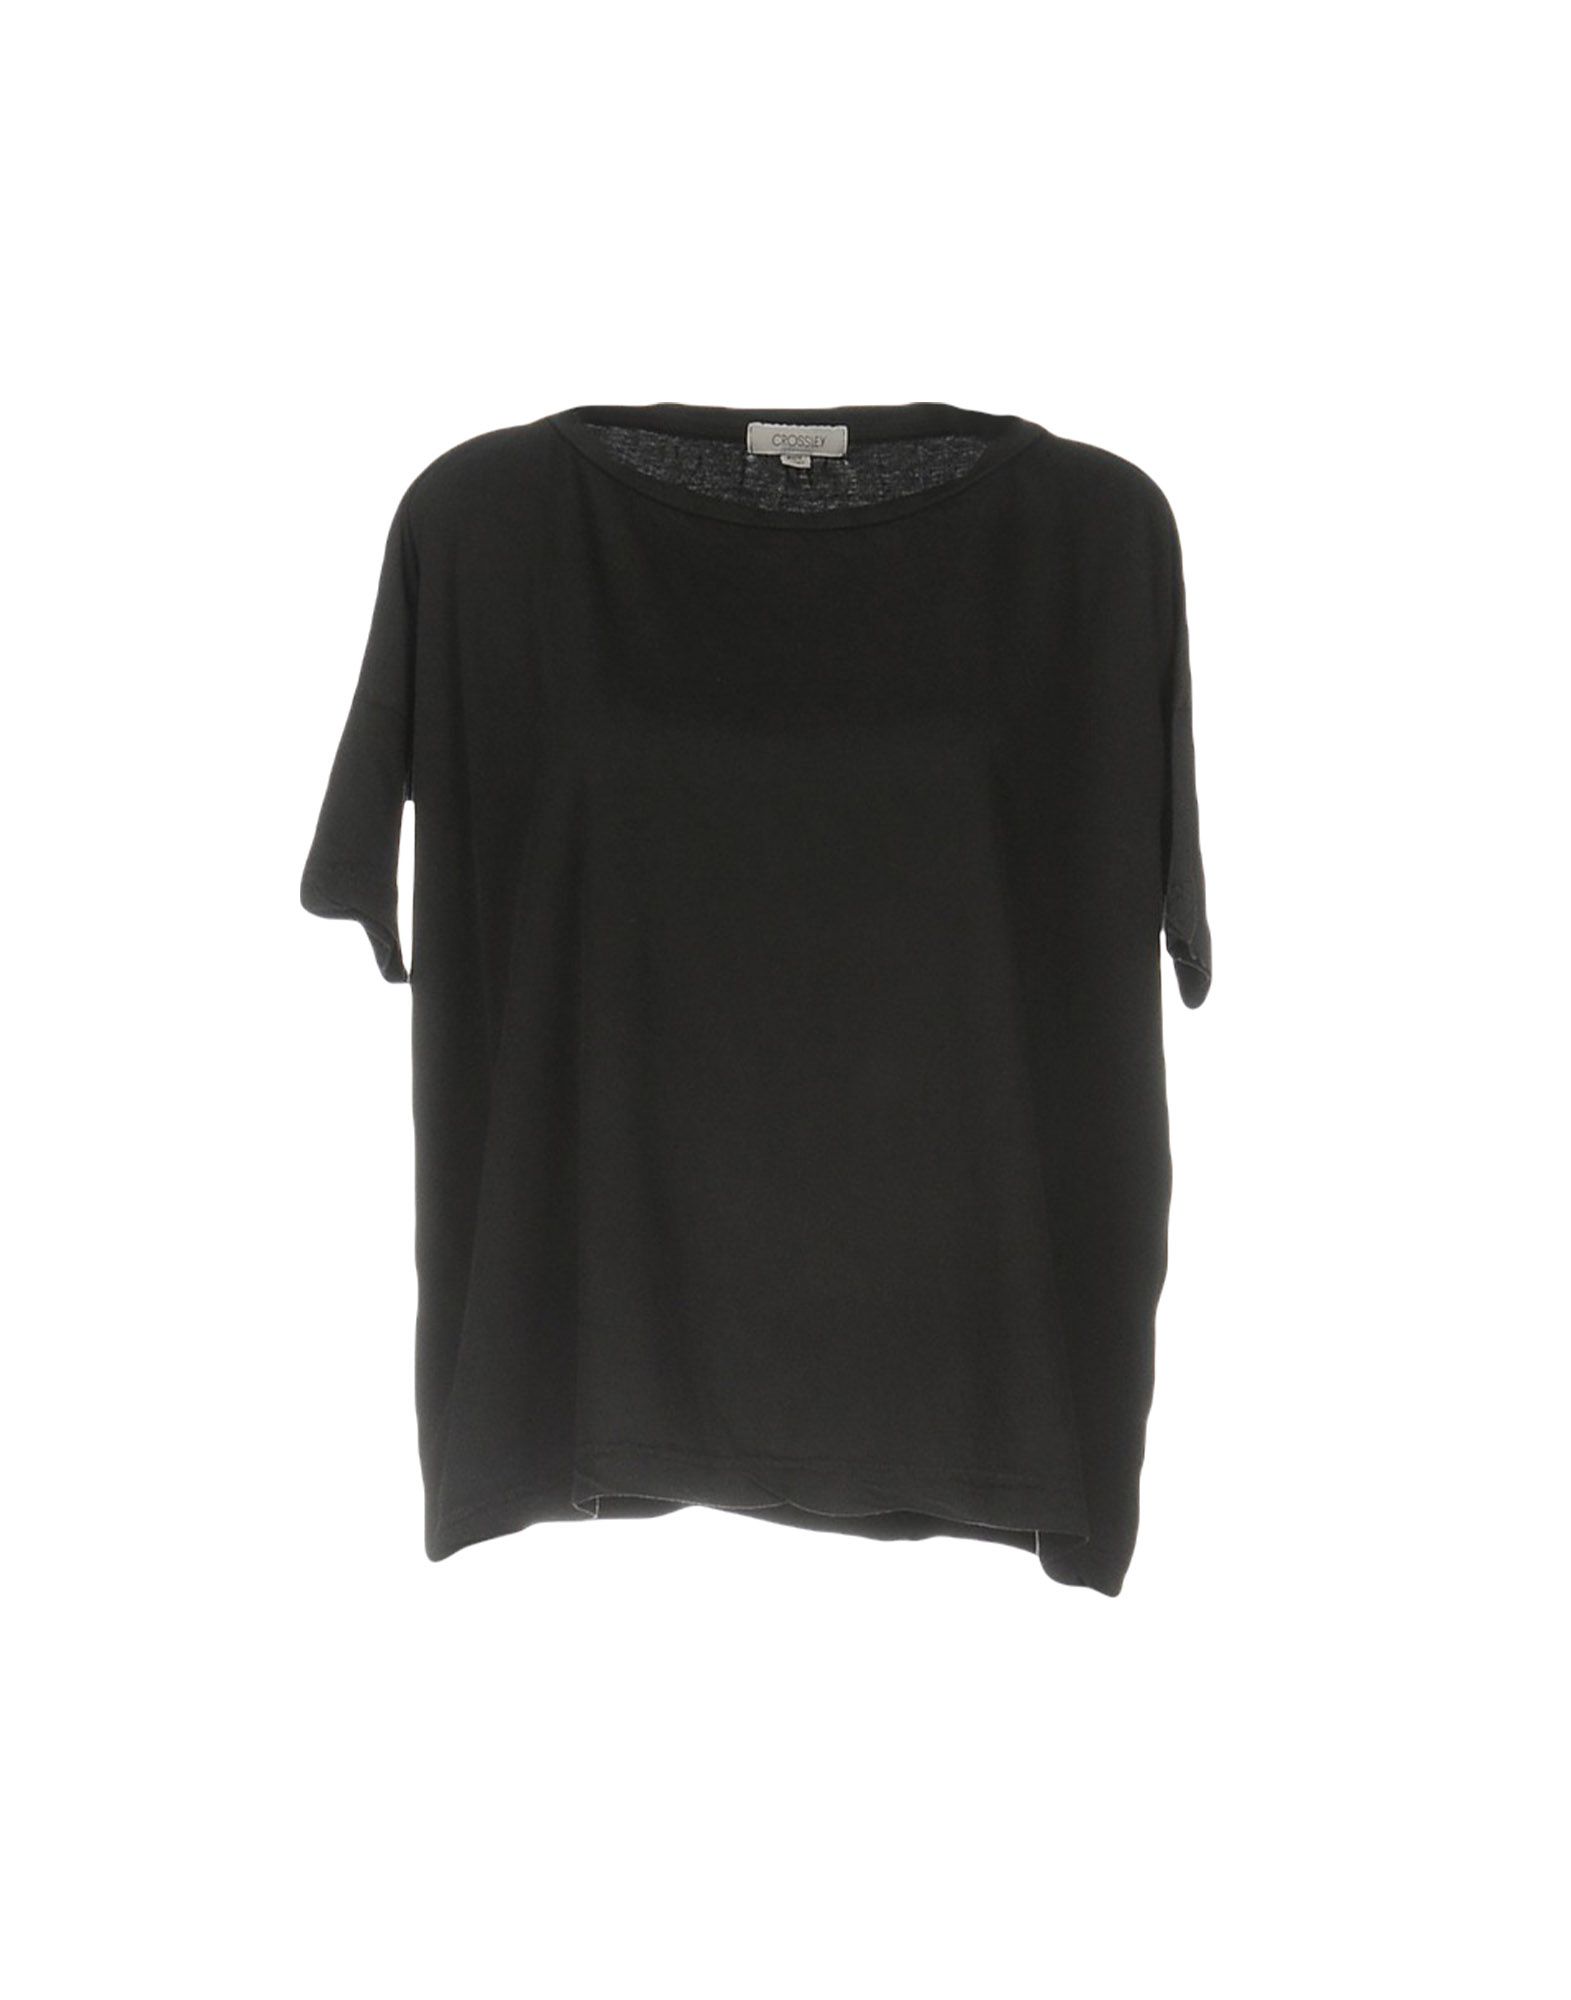 Shop Crossley Woman T-shirt Black Size S Cotton